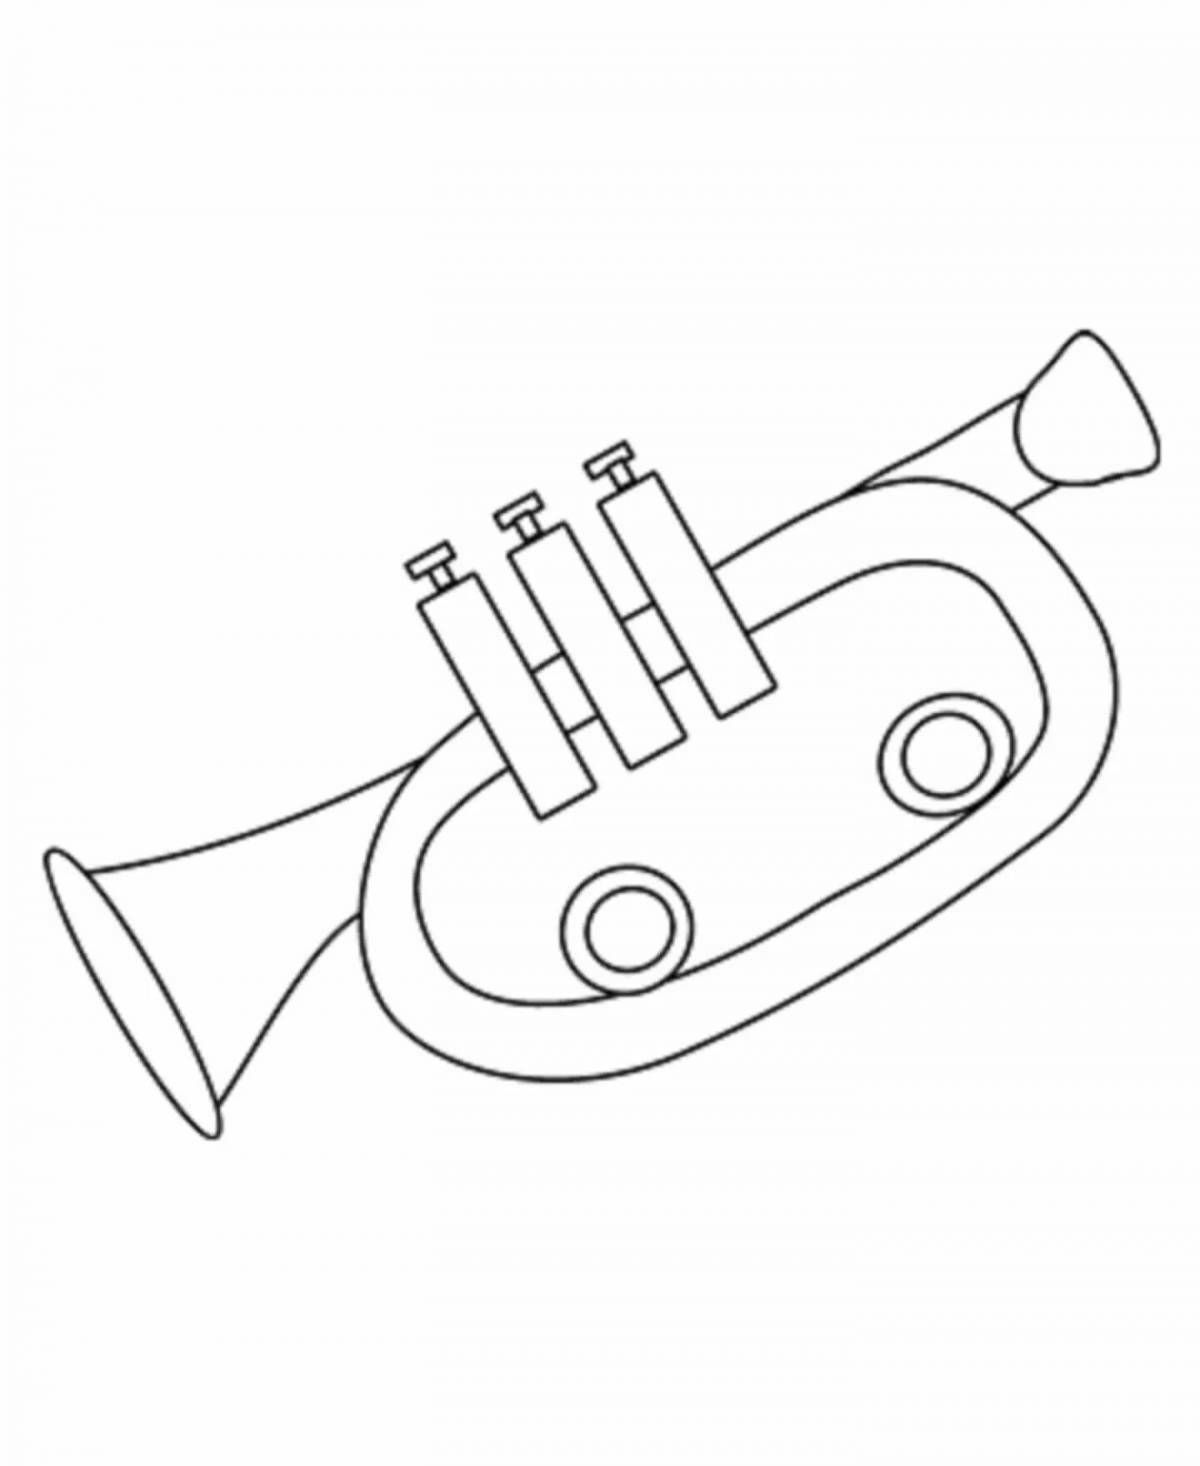 Прекрасная страница раскраски трубы для учеников